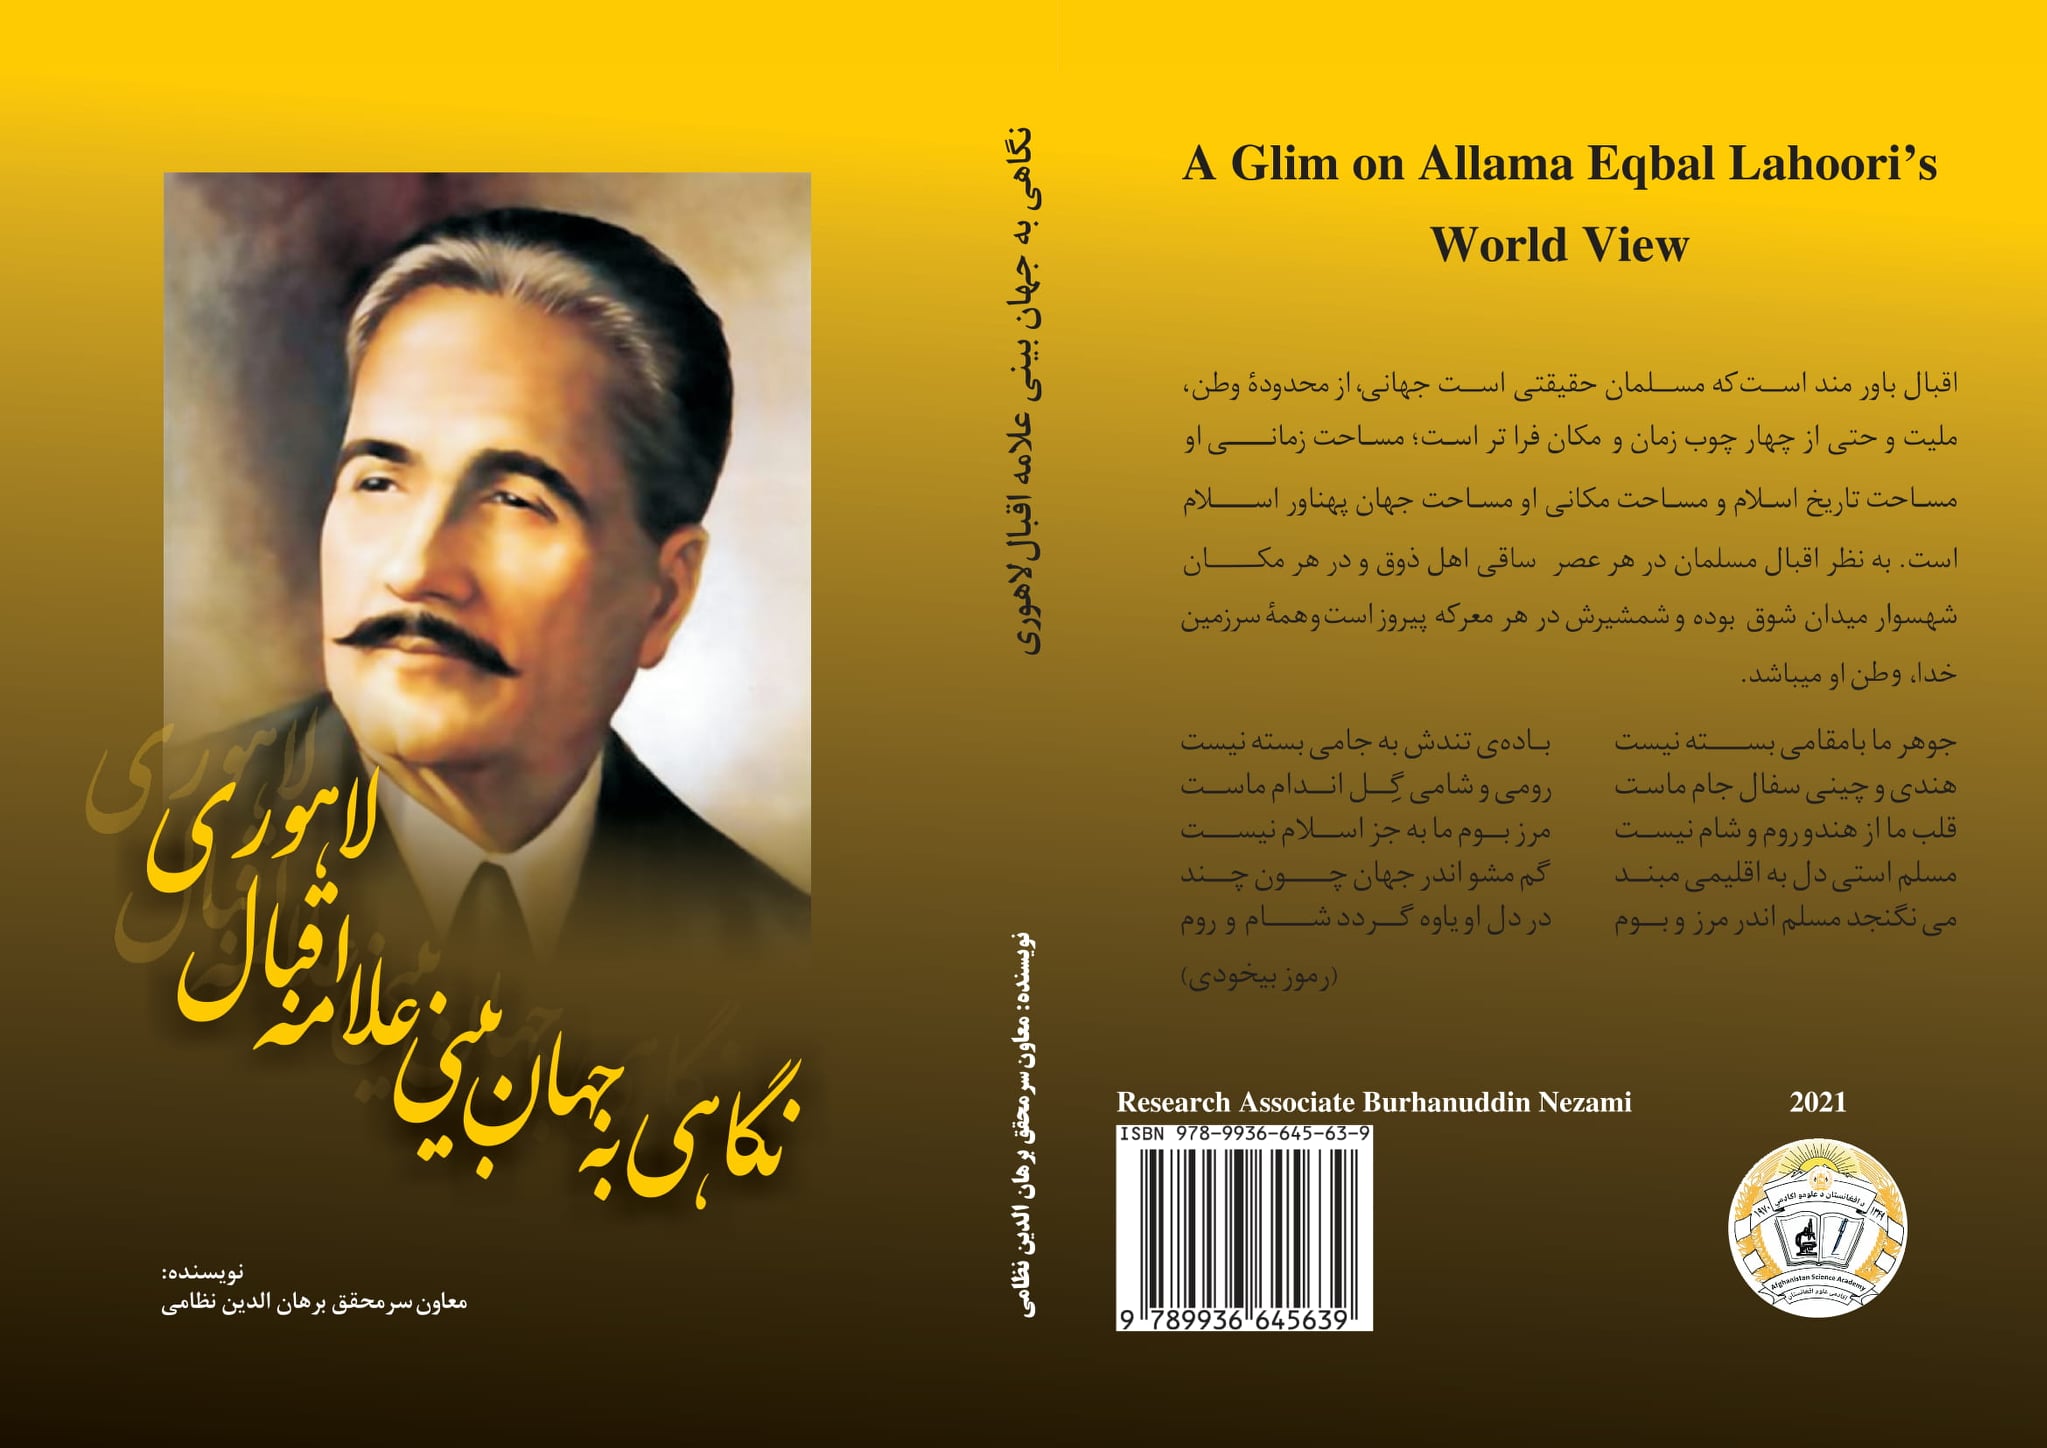 کتاب «نگاهی به جهان بینی علامه اقبال لاهوری» به زیور چاپ آراسته گردید